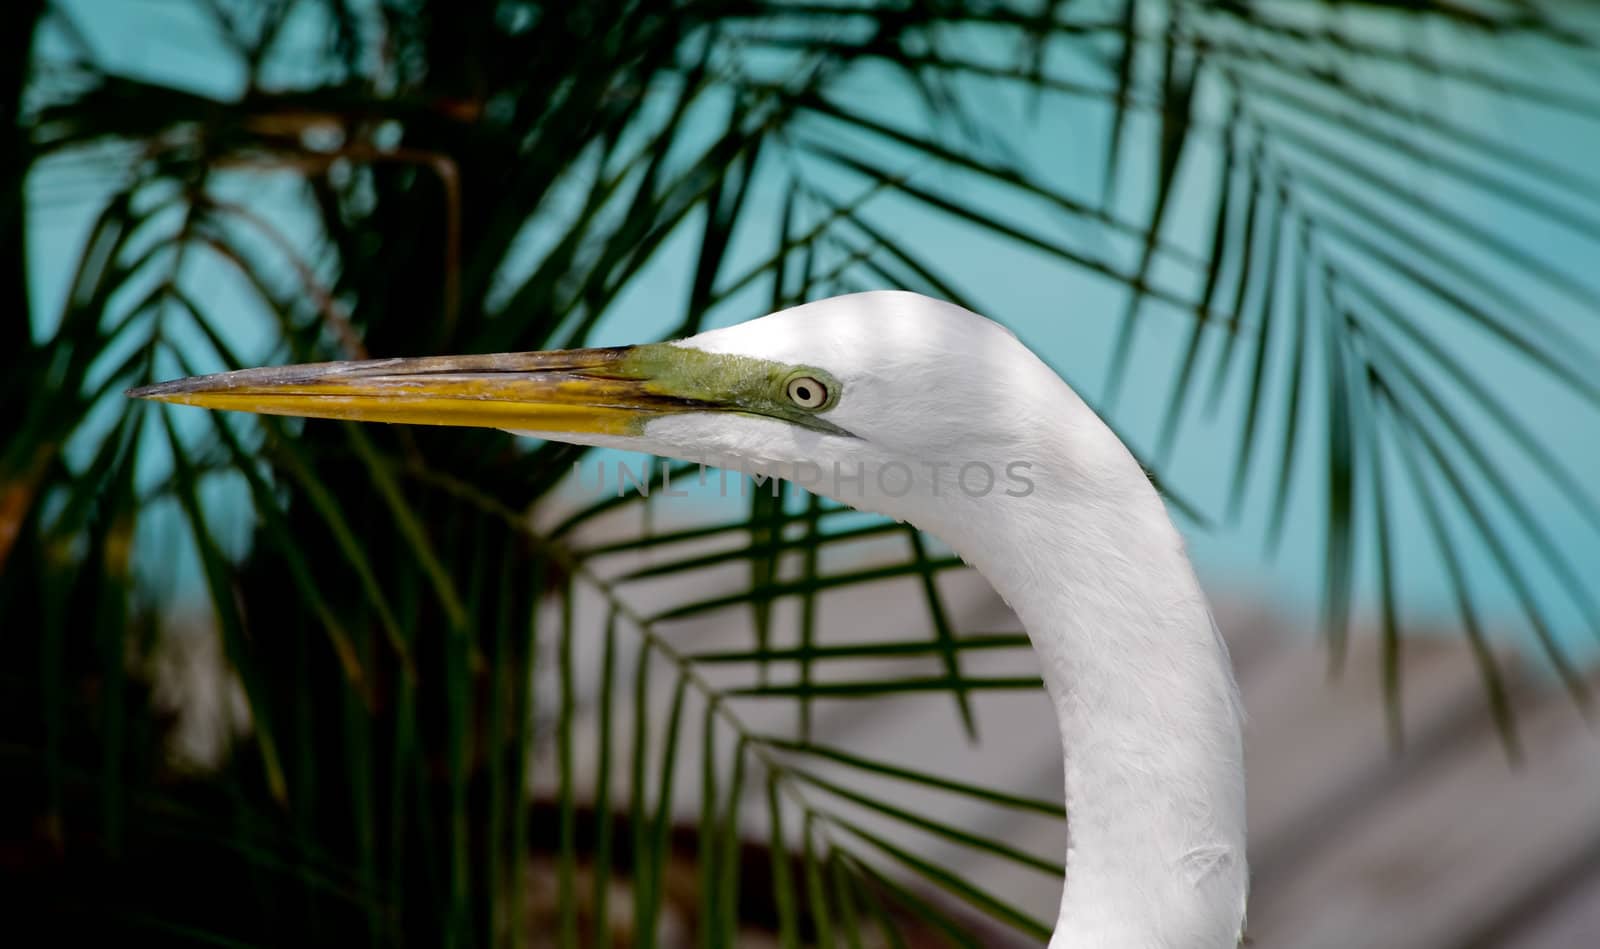 tropical bird in a park in Florida USA